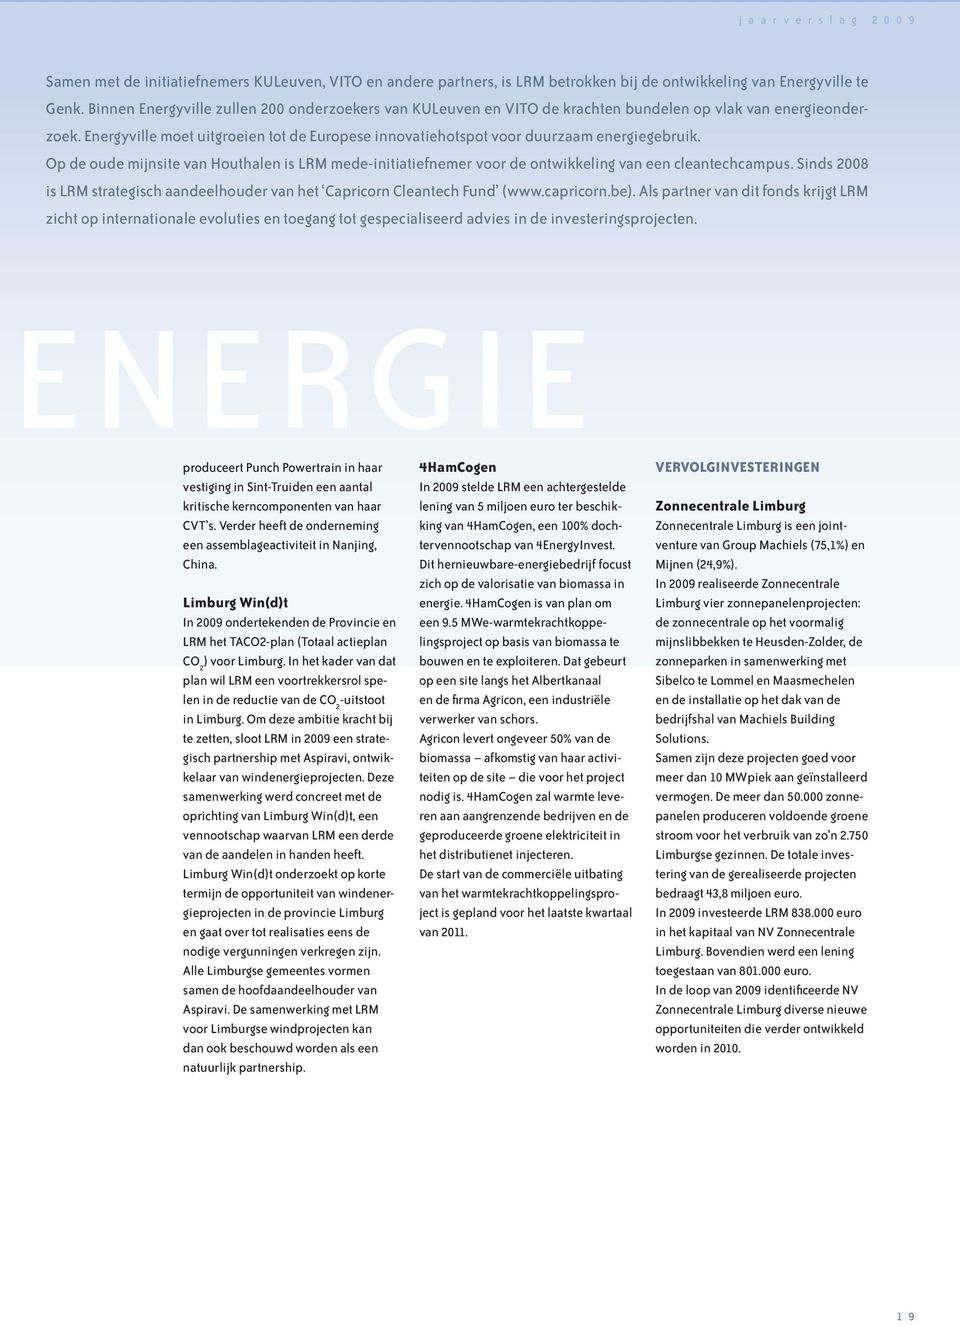 Energyville moet uitgroeien tot de Europese innovatiehotspot voor duurzaam energiegebruik. Op de oude mijnsite van Houthalen is LRM mede-initiatiefnemer voor de ontwikkeling van een cleantechcampus.